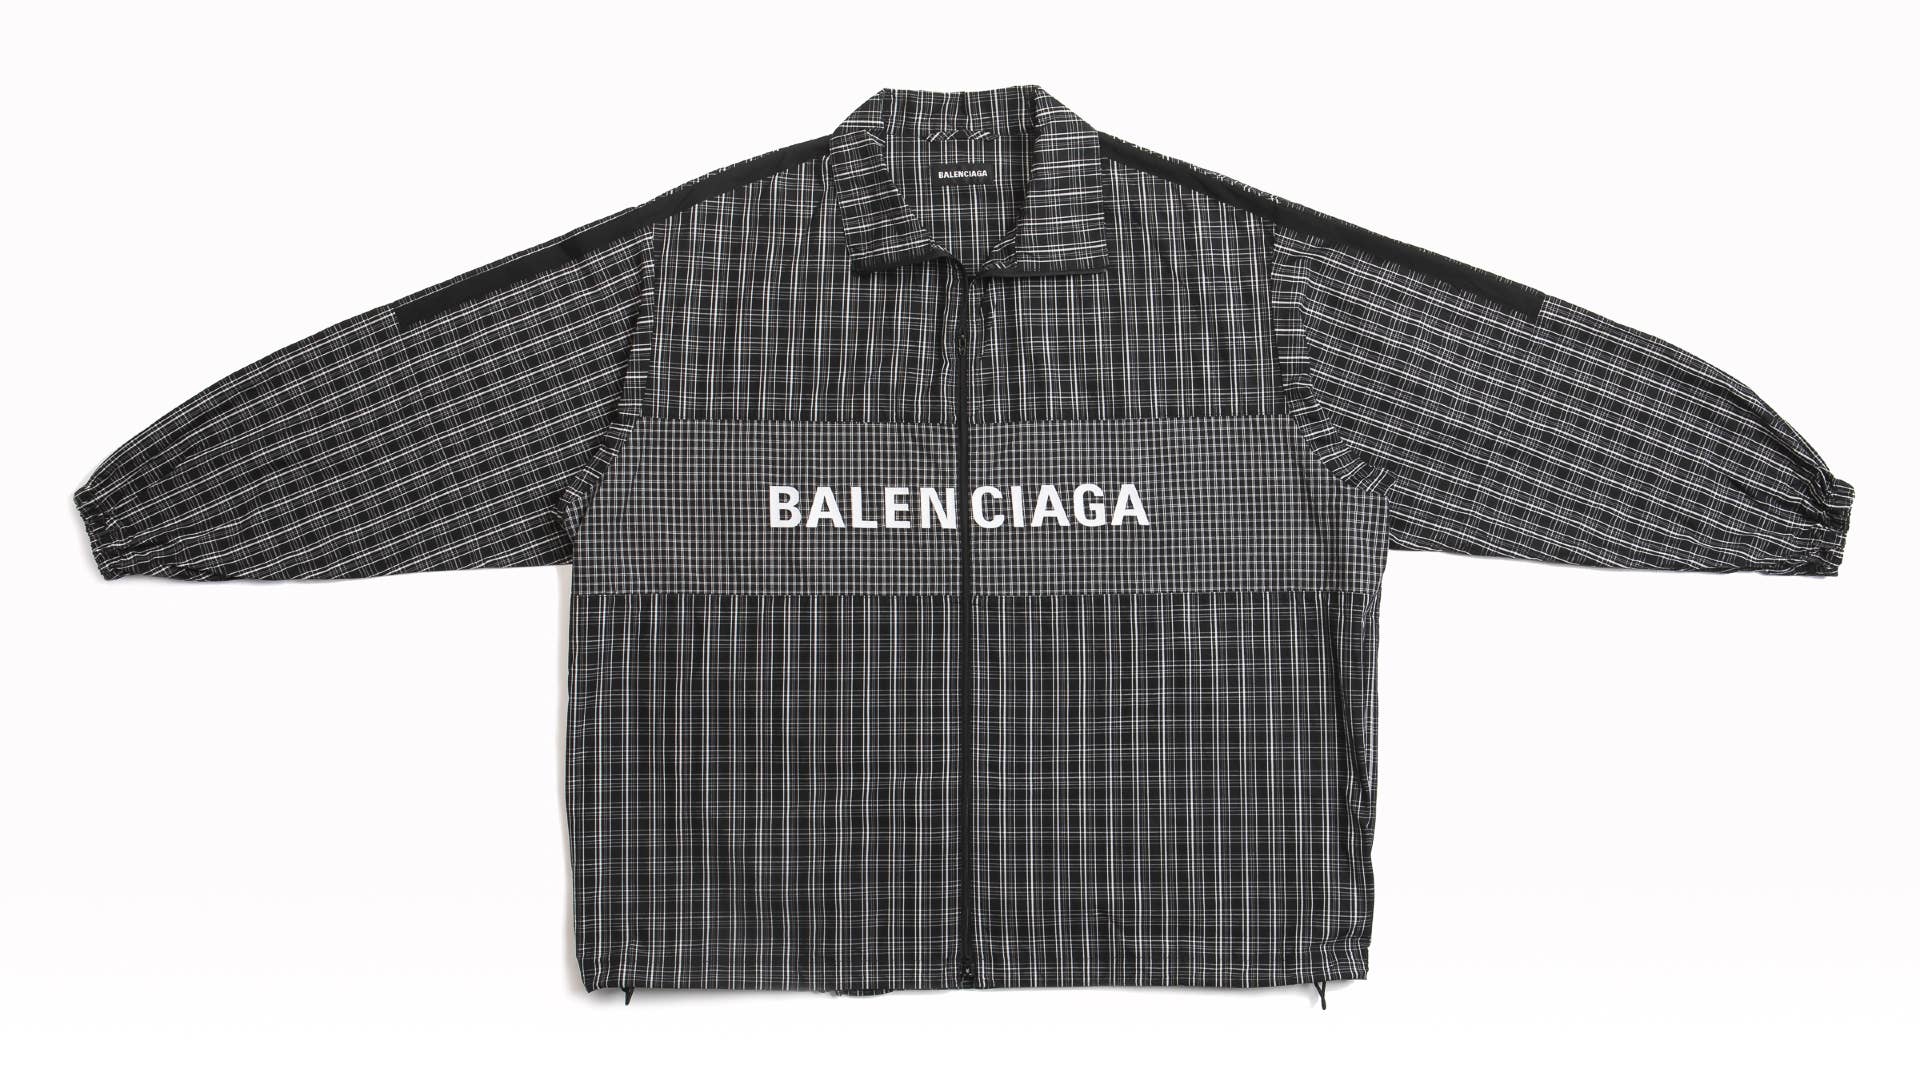 A Balenciaga brand top is shown.